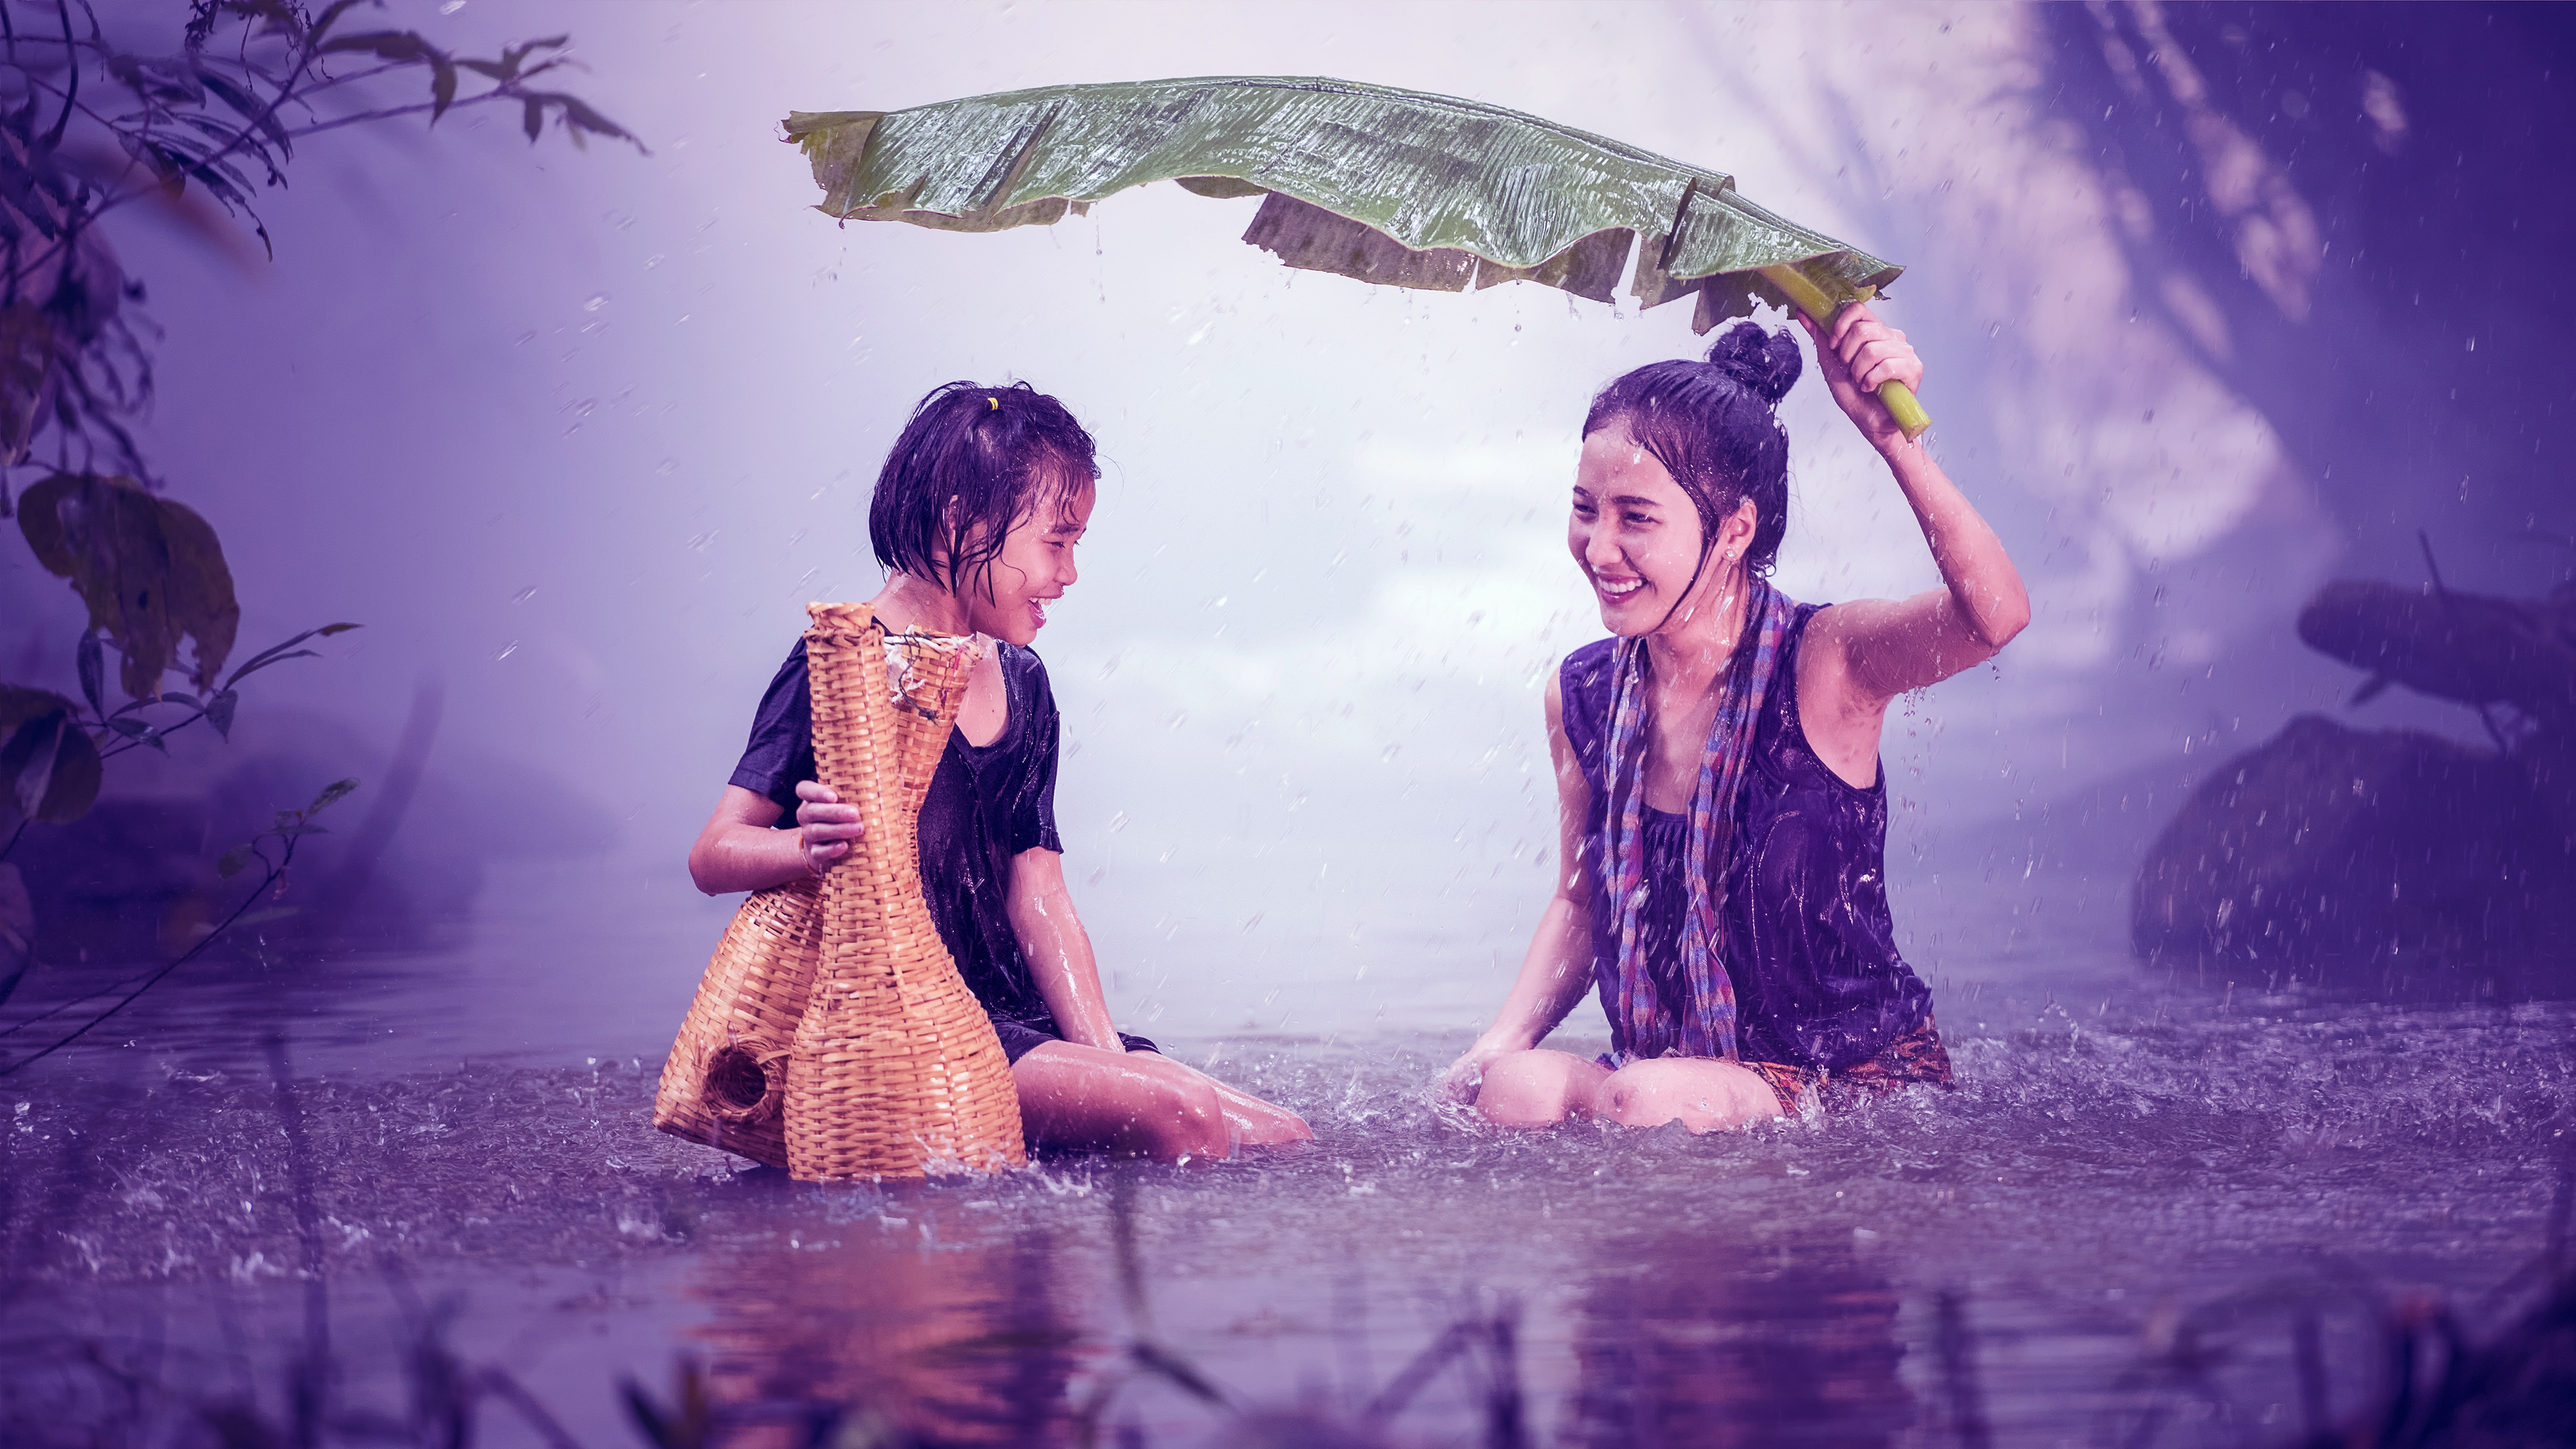 Скачать обои бесплатно Люди, Дождь, Ребёнок, Фотографии, Азиатки картинка на рабочий стол ПК